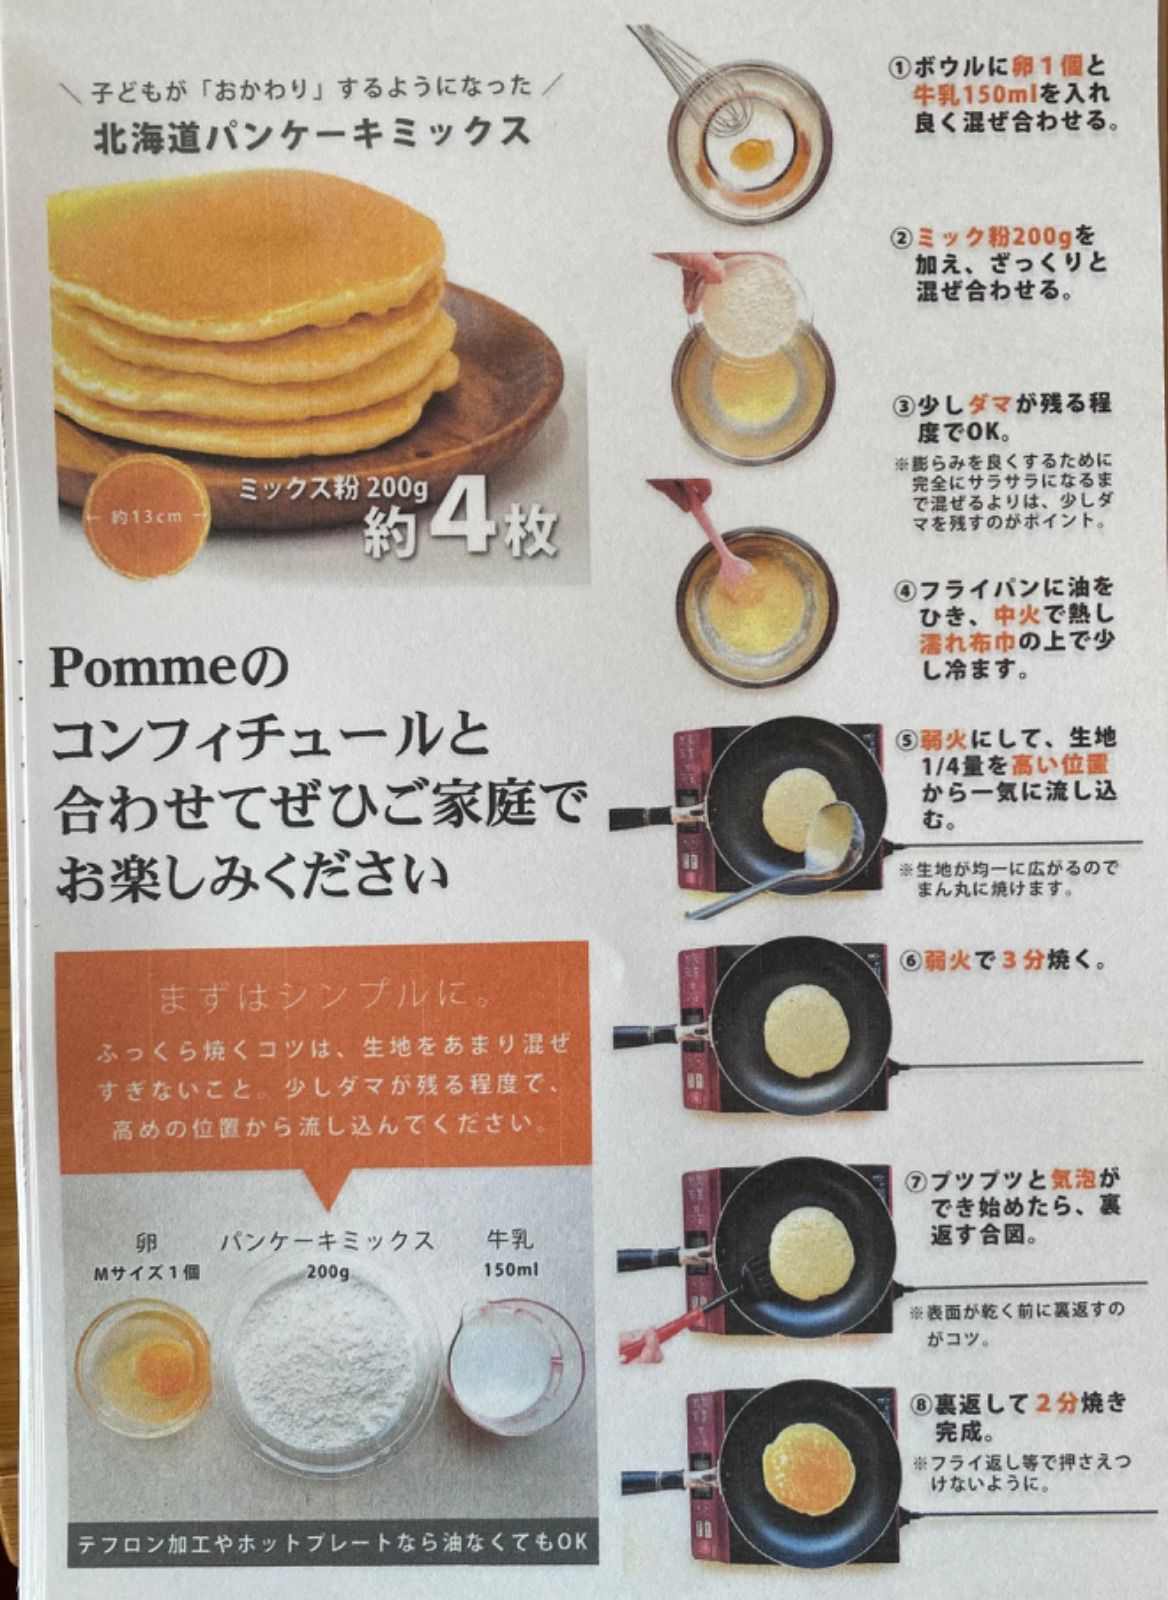 【Le cafe de pomme×市立船橋】pommeセット-4